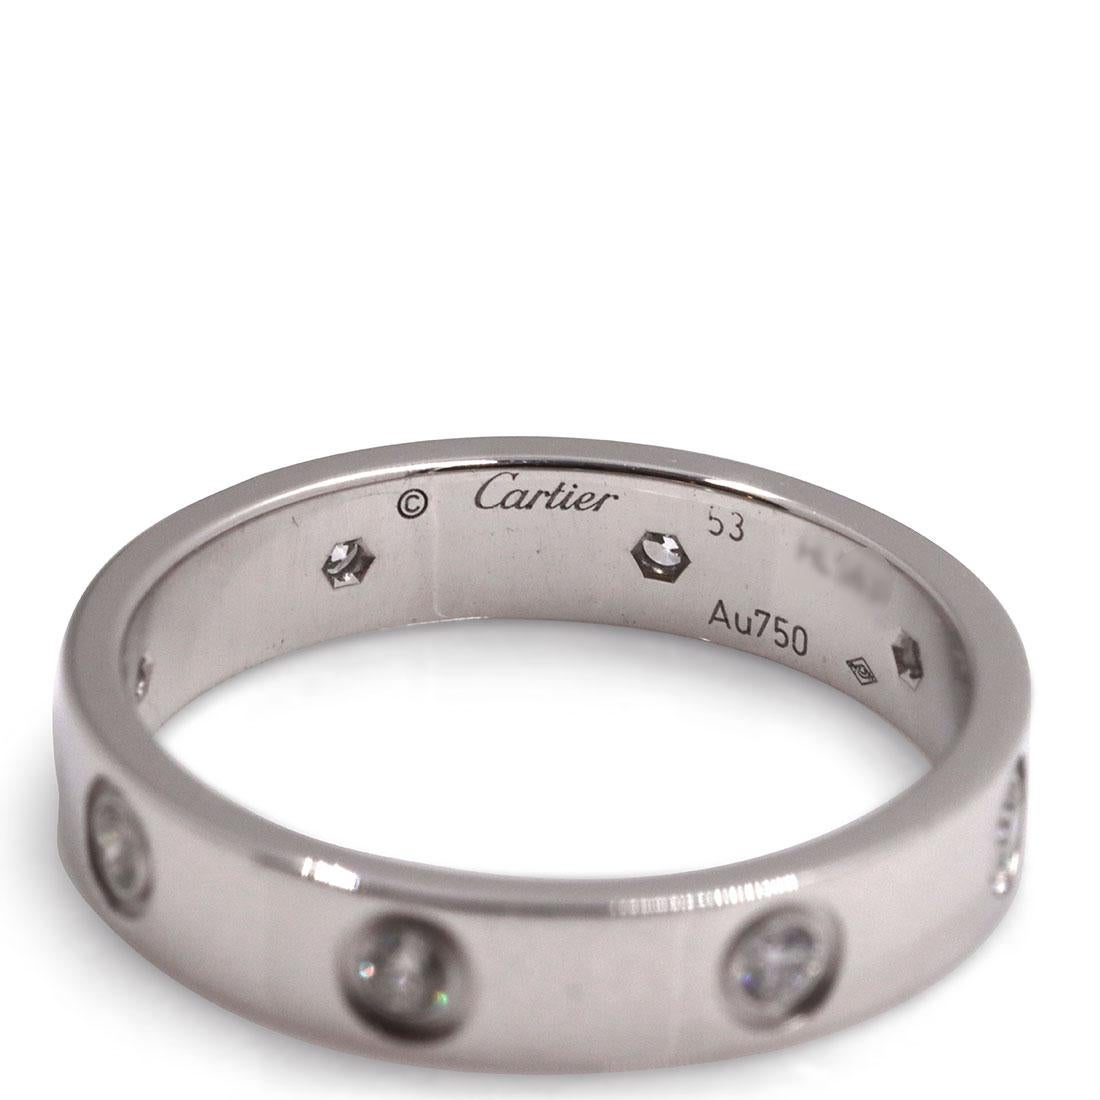 Brilliant Cut Cartier Love White Gold Diamond Ring